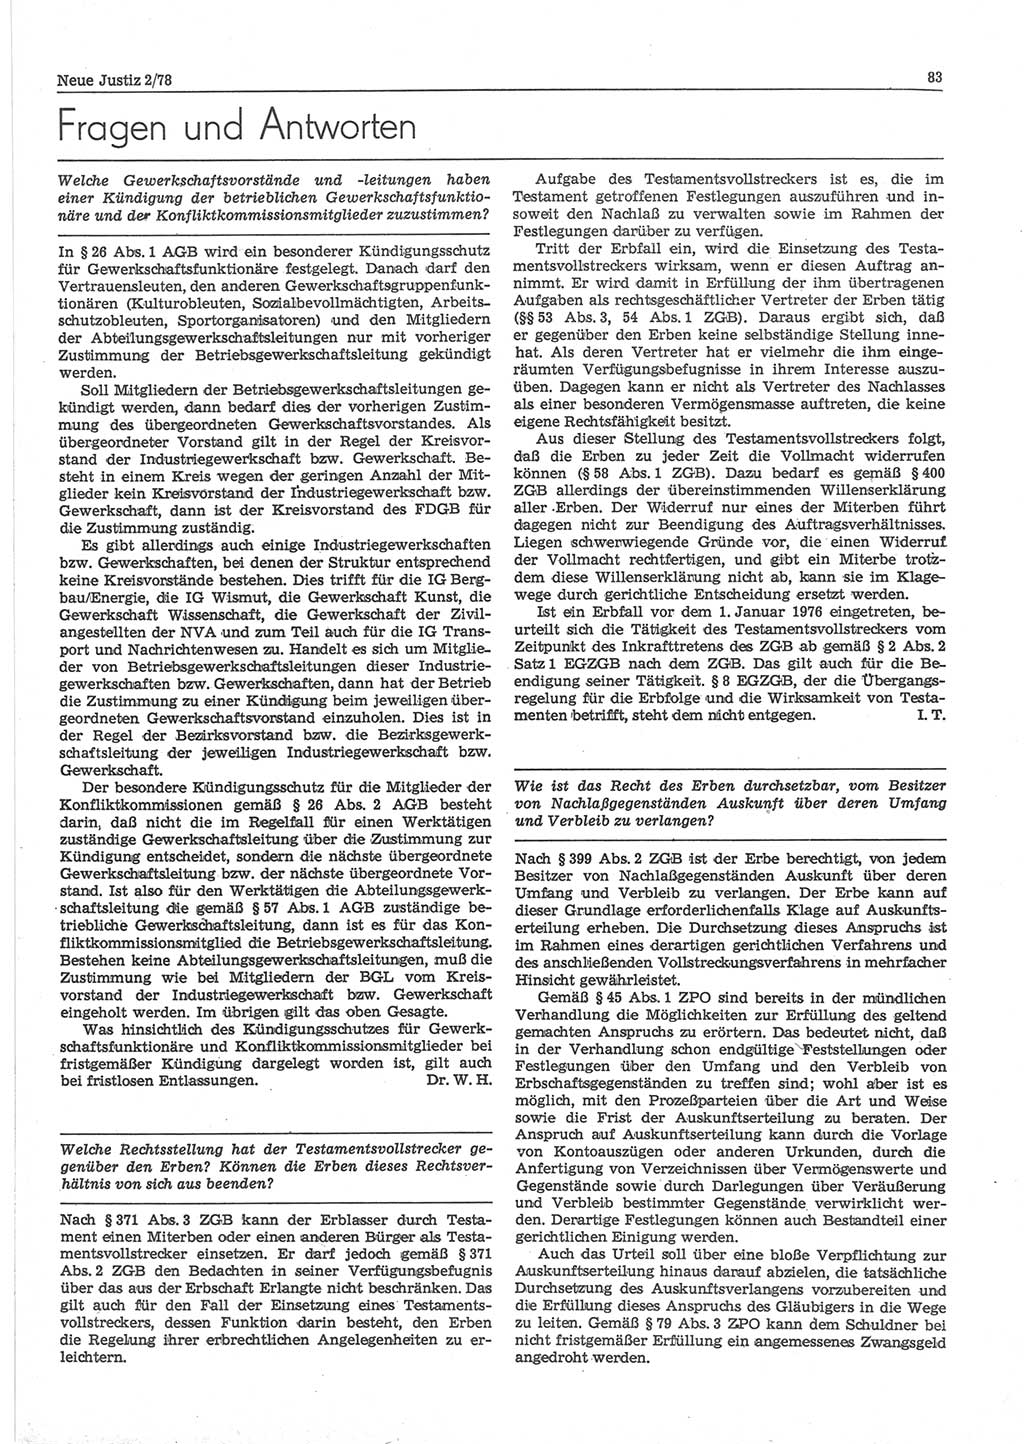 Neue Justiz (NJ), Zeitschrift für sozialistisches Recht und Gesetzlichkeit [Deutsche Demokratische Republik (DDR)], 32. Jahrgang 1978, Seite 83 (NJ DDR 1978, S. 83)